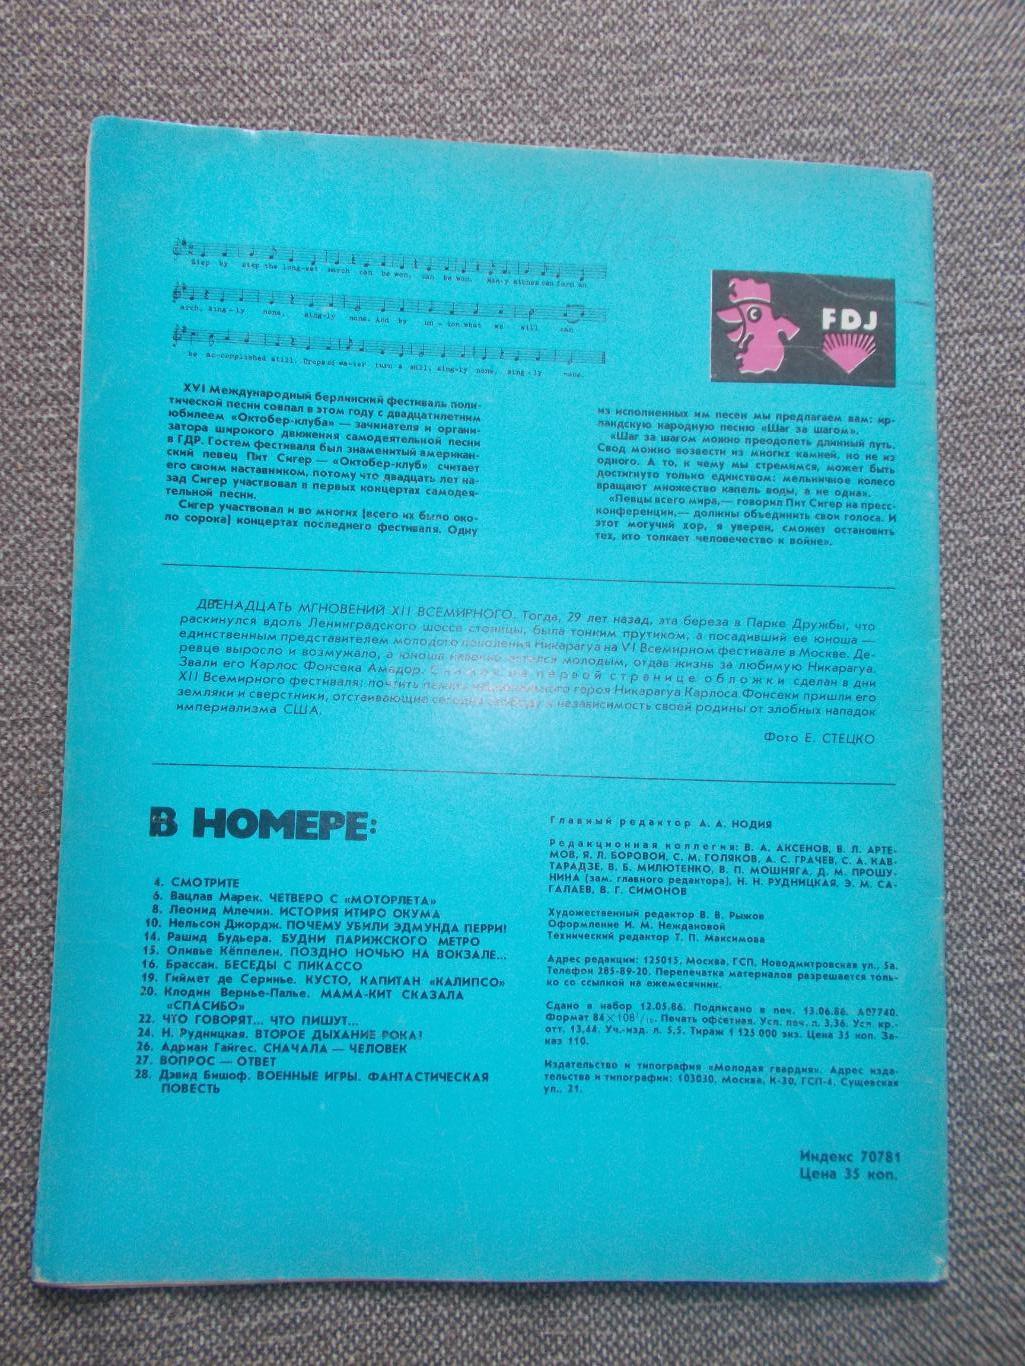 Журнал СССР :Ровесник№ 7 (июль) 1986 г. (Молодежный музыкальный журнал) 1